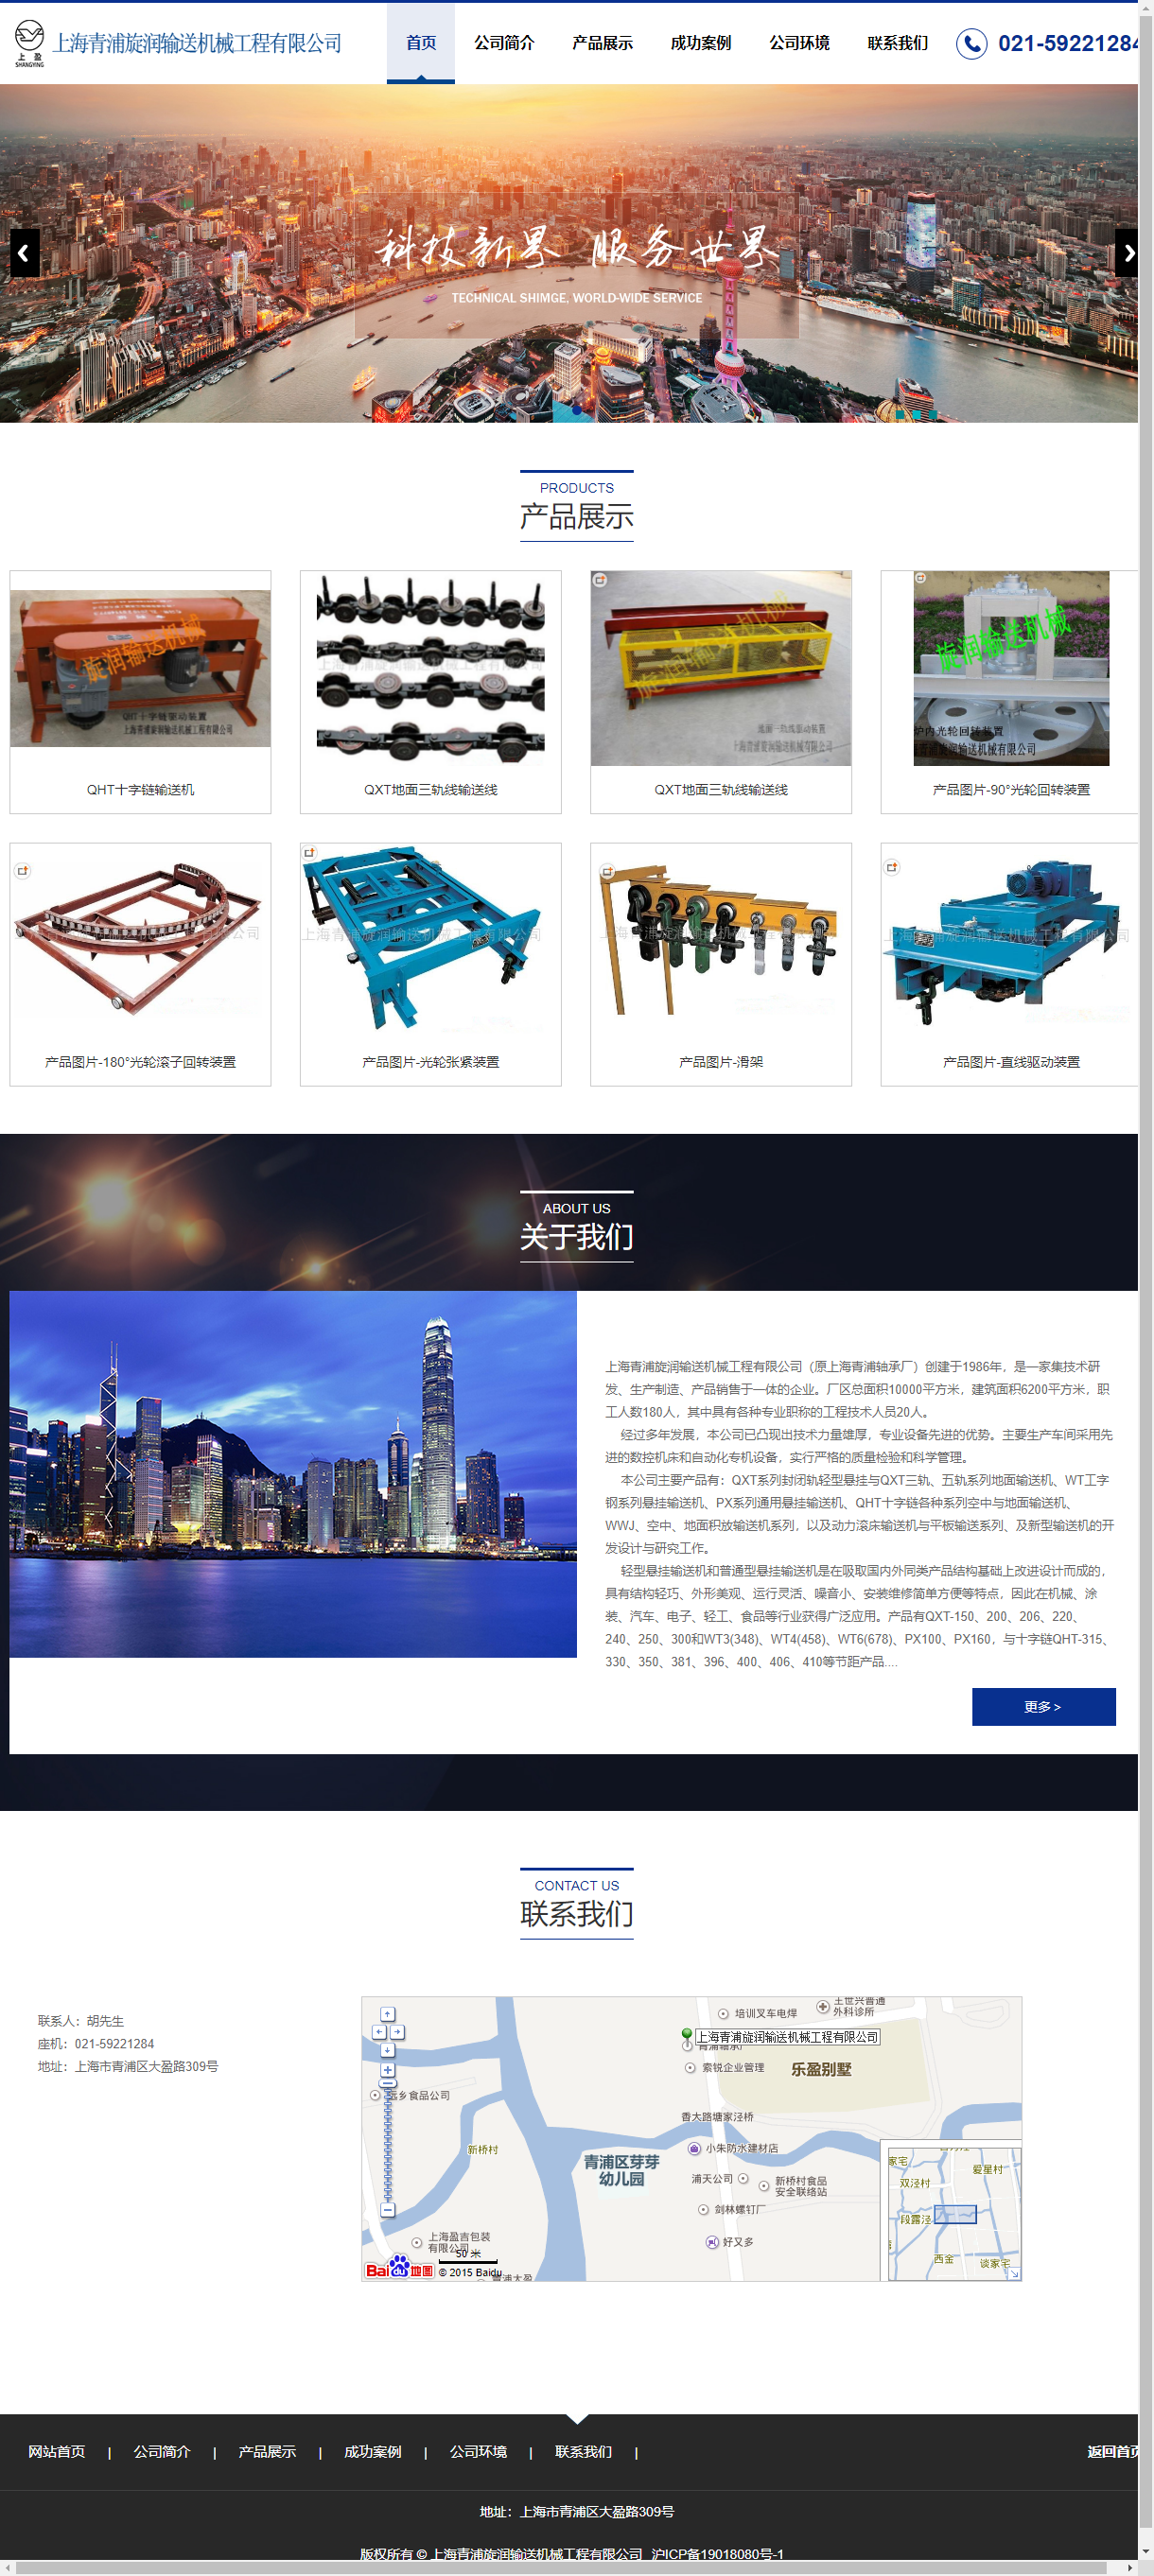 上海青浦旋润输送机械工程有限公司网站案例